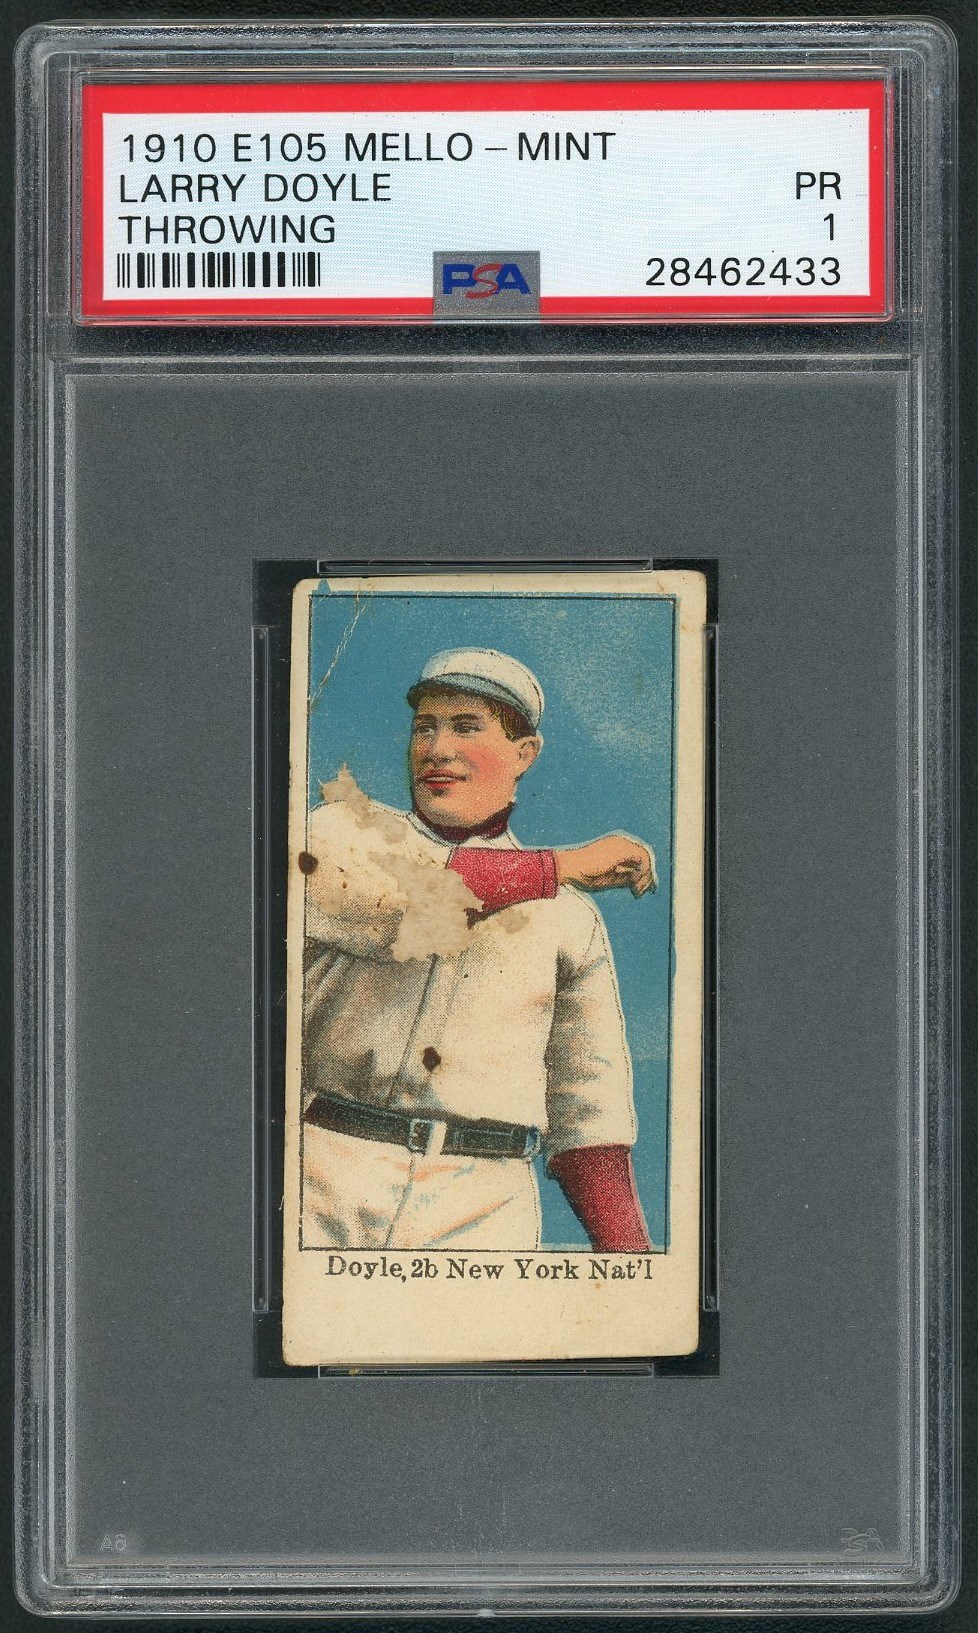 1910 E105 Mello-Mint Larry Doyle (Throwing) - PSA PR 1